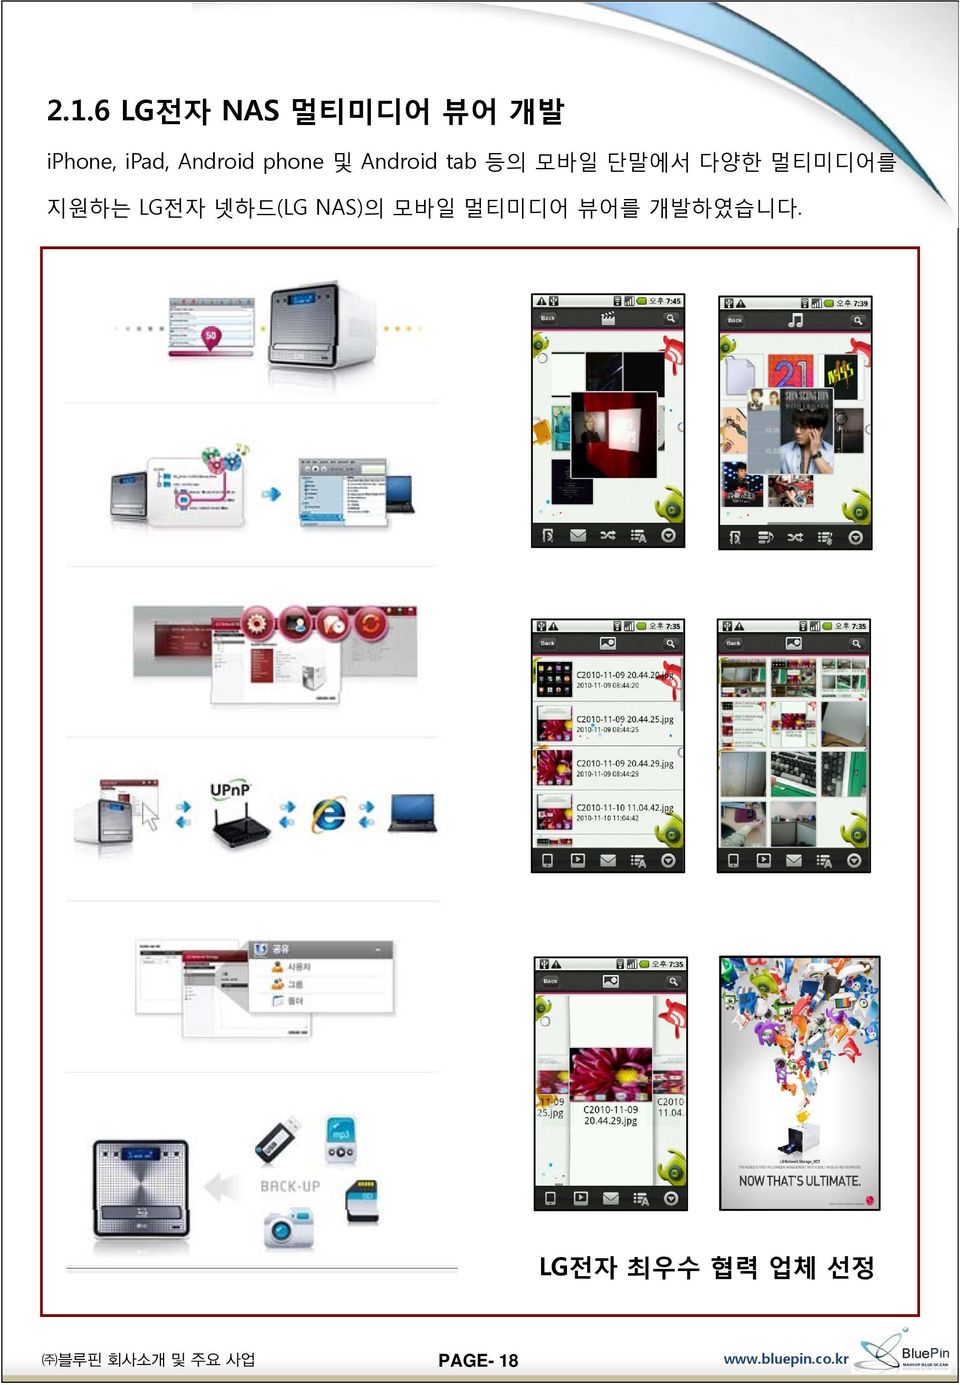 다양한 멀티미디어를 지원하는 LG전자 넷하드(LG NAS)의 모바일